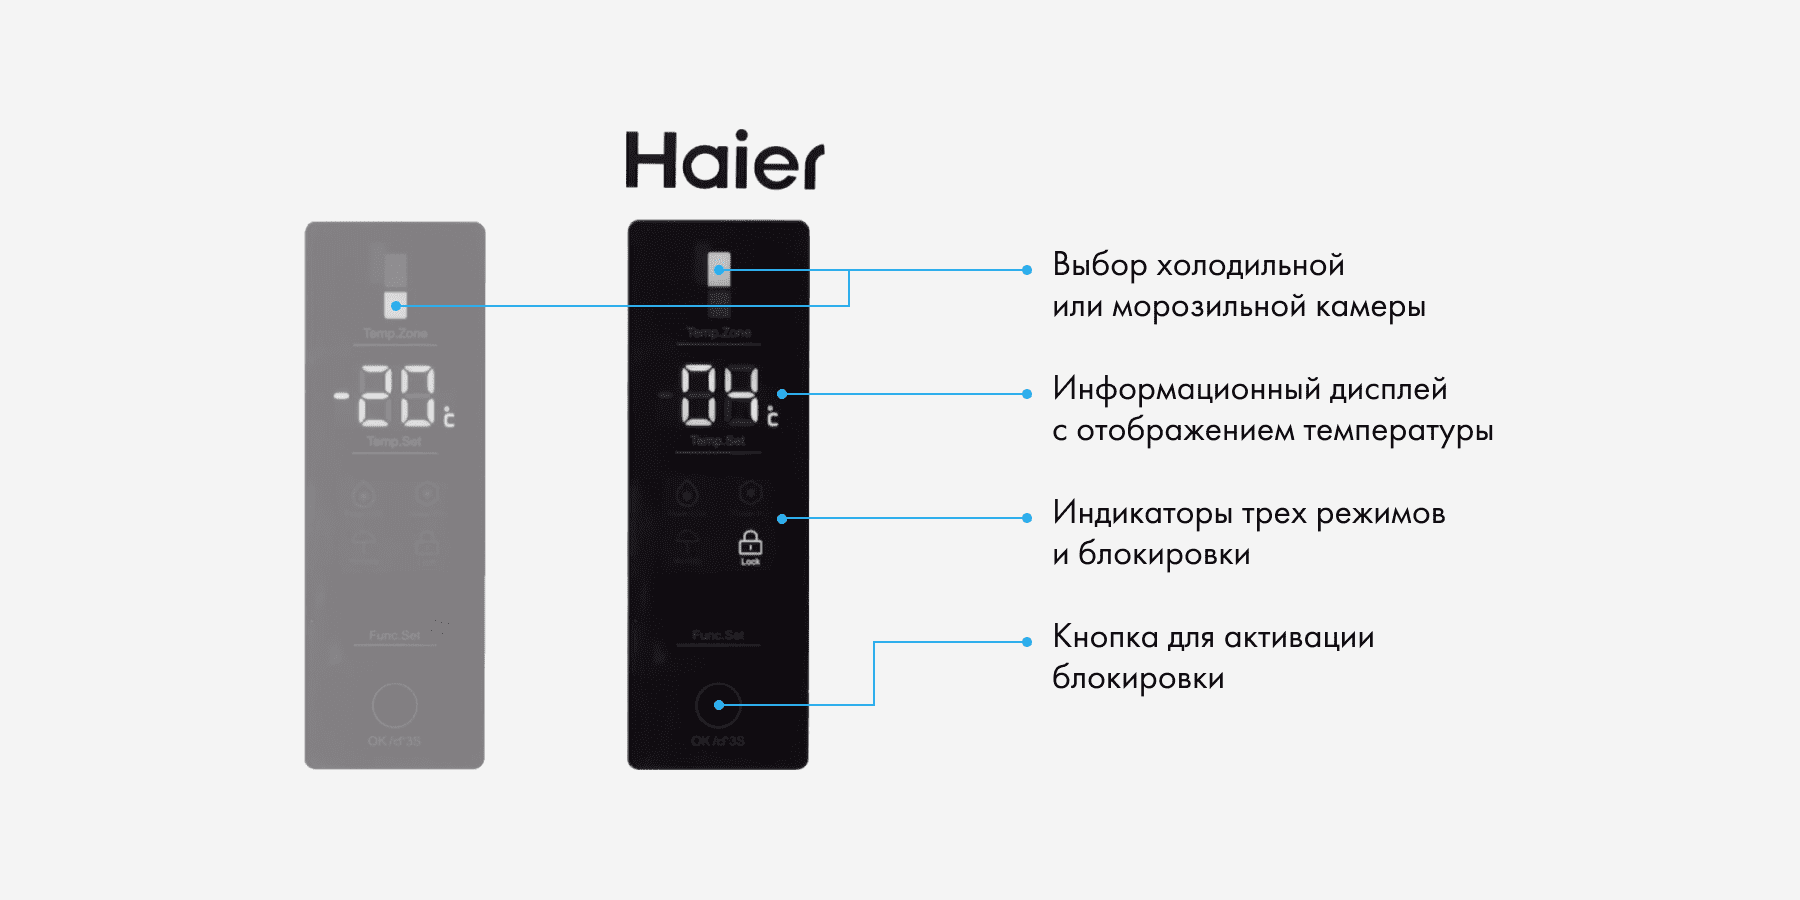 Повтор экрана на haier. Холодильник Haier cef535asg. Холодильник Хаер как настроить температуру. Холодильник Haier как выставить температуру. Как настроить холодильник Хайер на дисплее температуру.